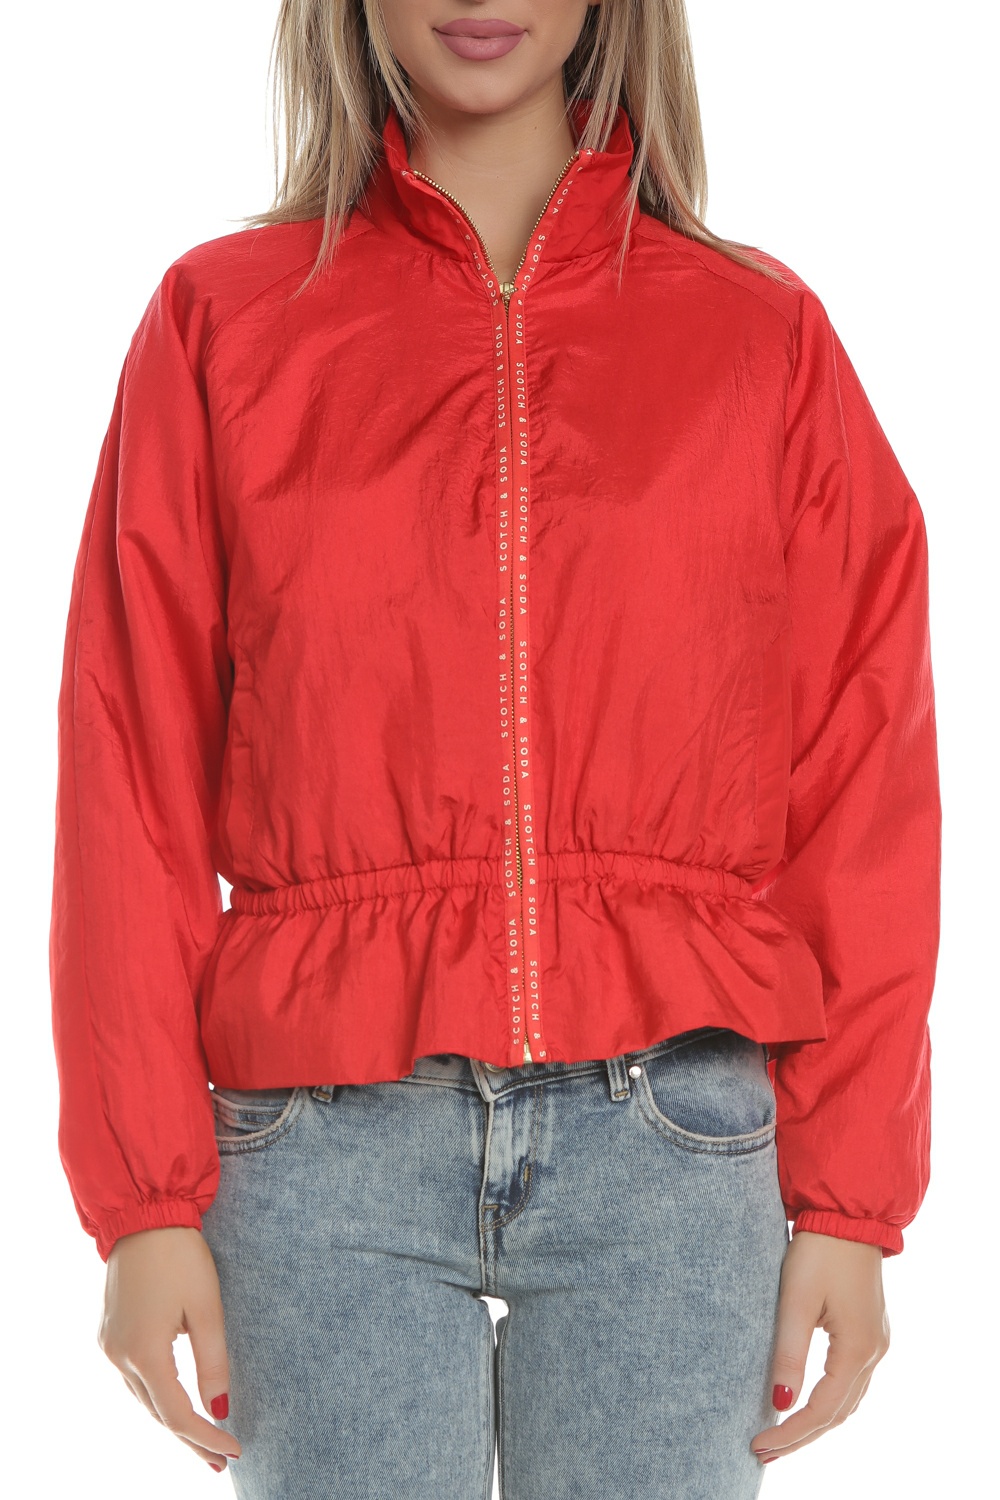 Γυναικεία/Ρούχα/Πανωφόρια/Τζάκετς SCOTCH & SODA - Γυναικείο jacket SCOTCH & SODA κόκκινο